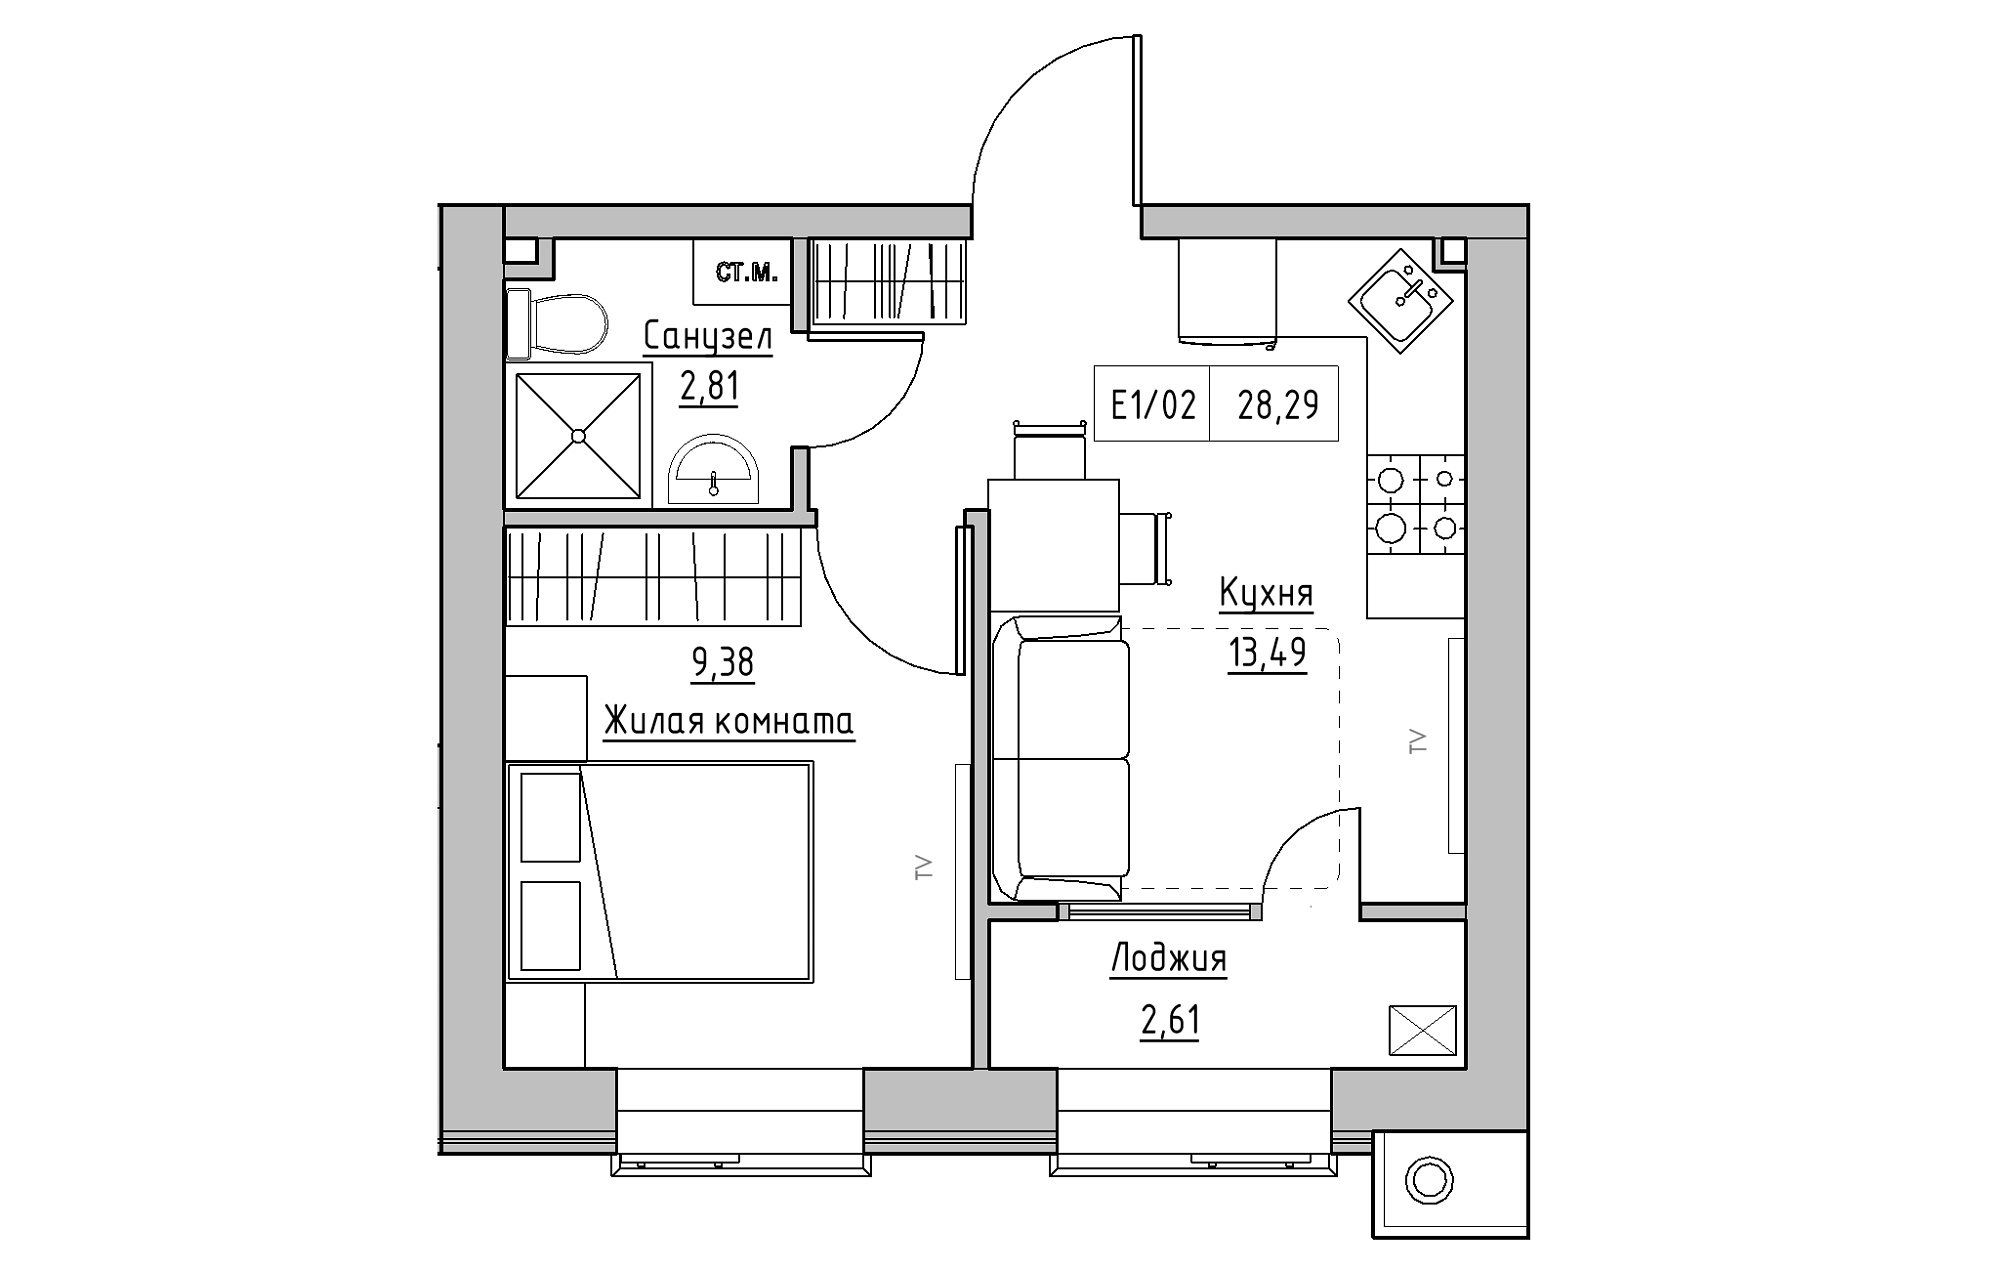 Планировка 1-к квартира площей 28.29м2, KS-013-01/0013.